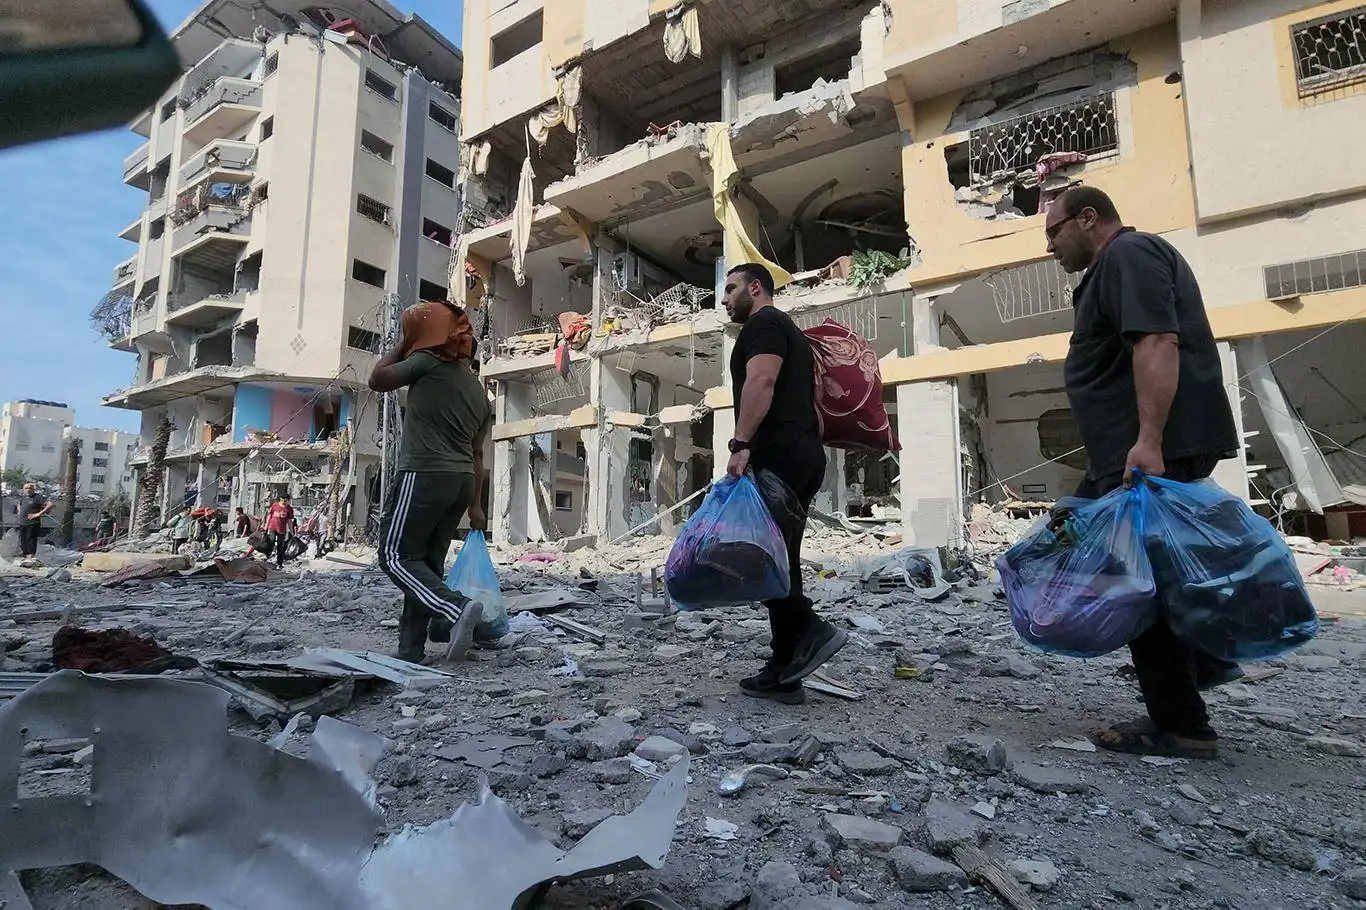 "750 bin Gazzelinin alınması karşılığında döviz sağlanacak" iddiasına yalanlama